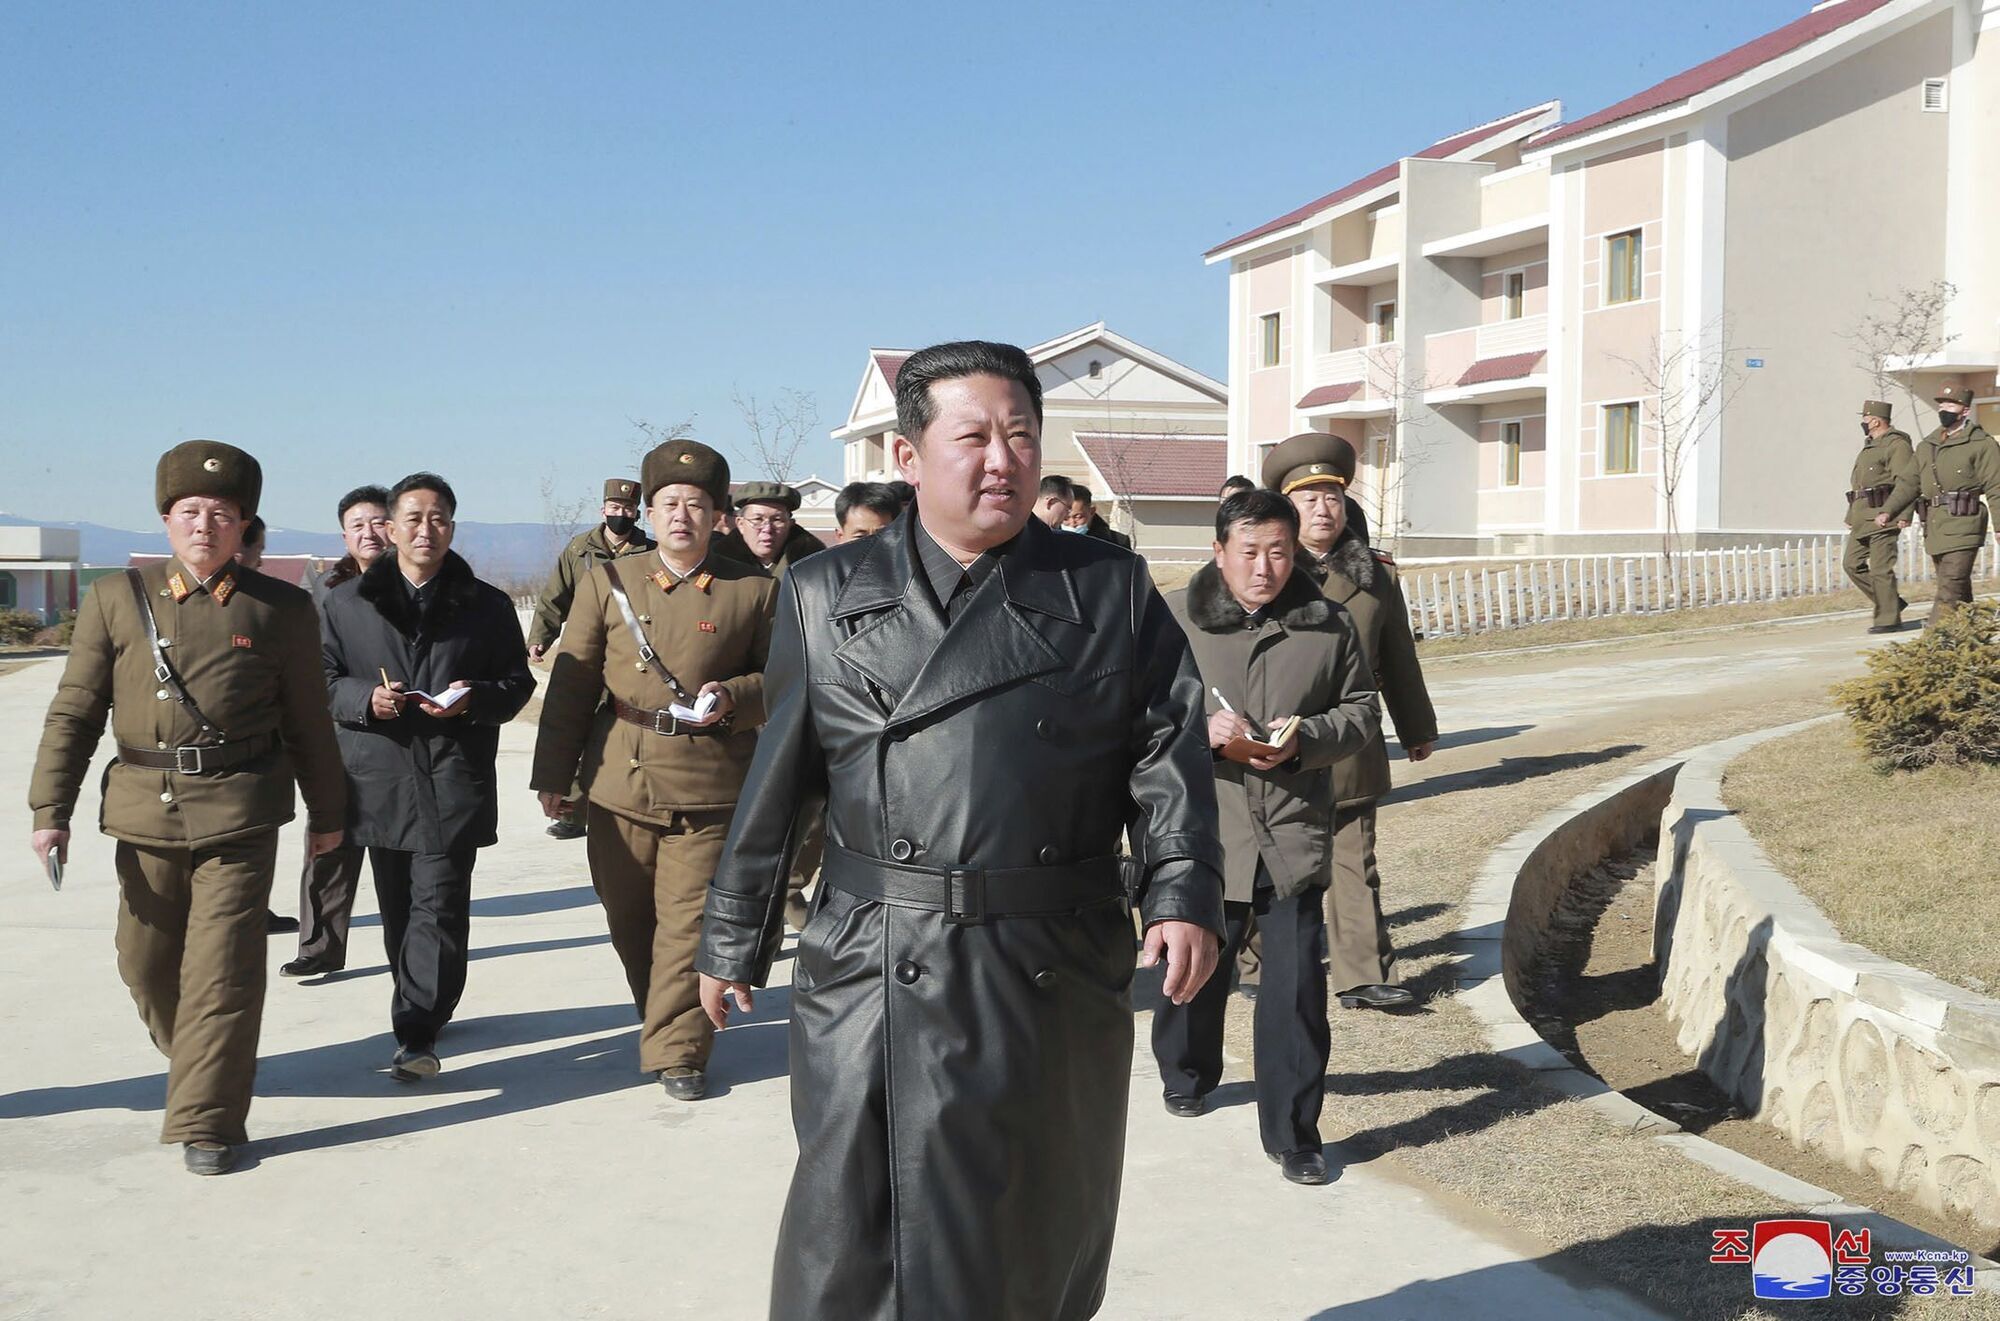 Ким Чен Ын появился на публике после длительного отсутствия